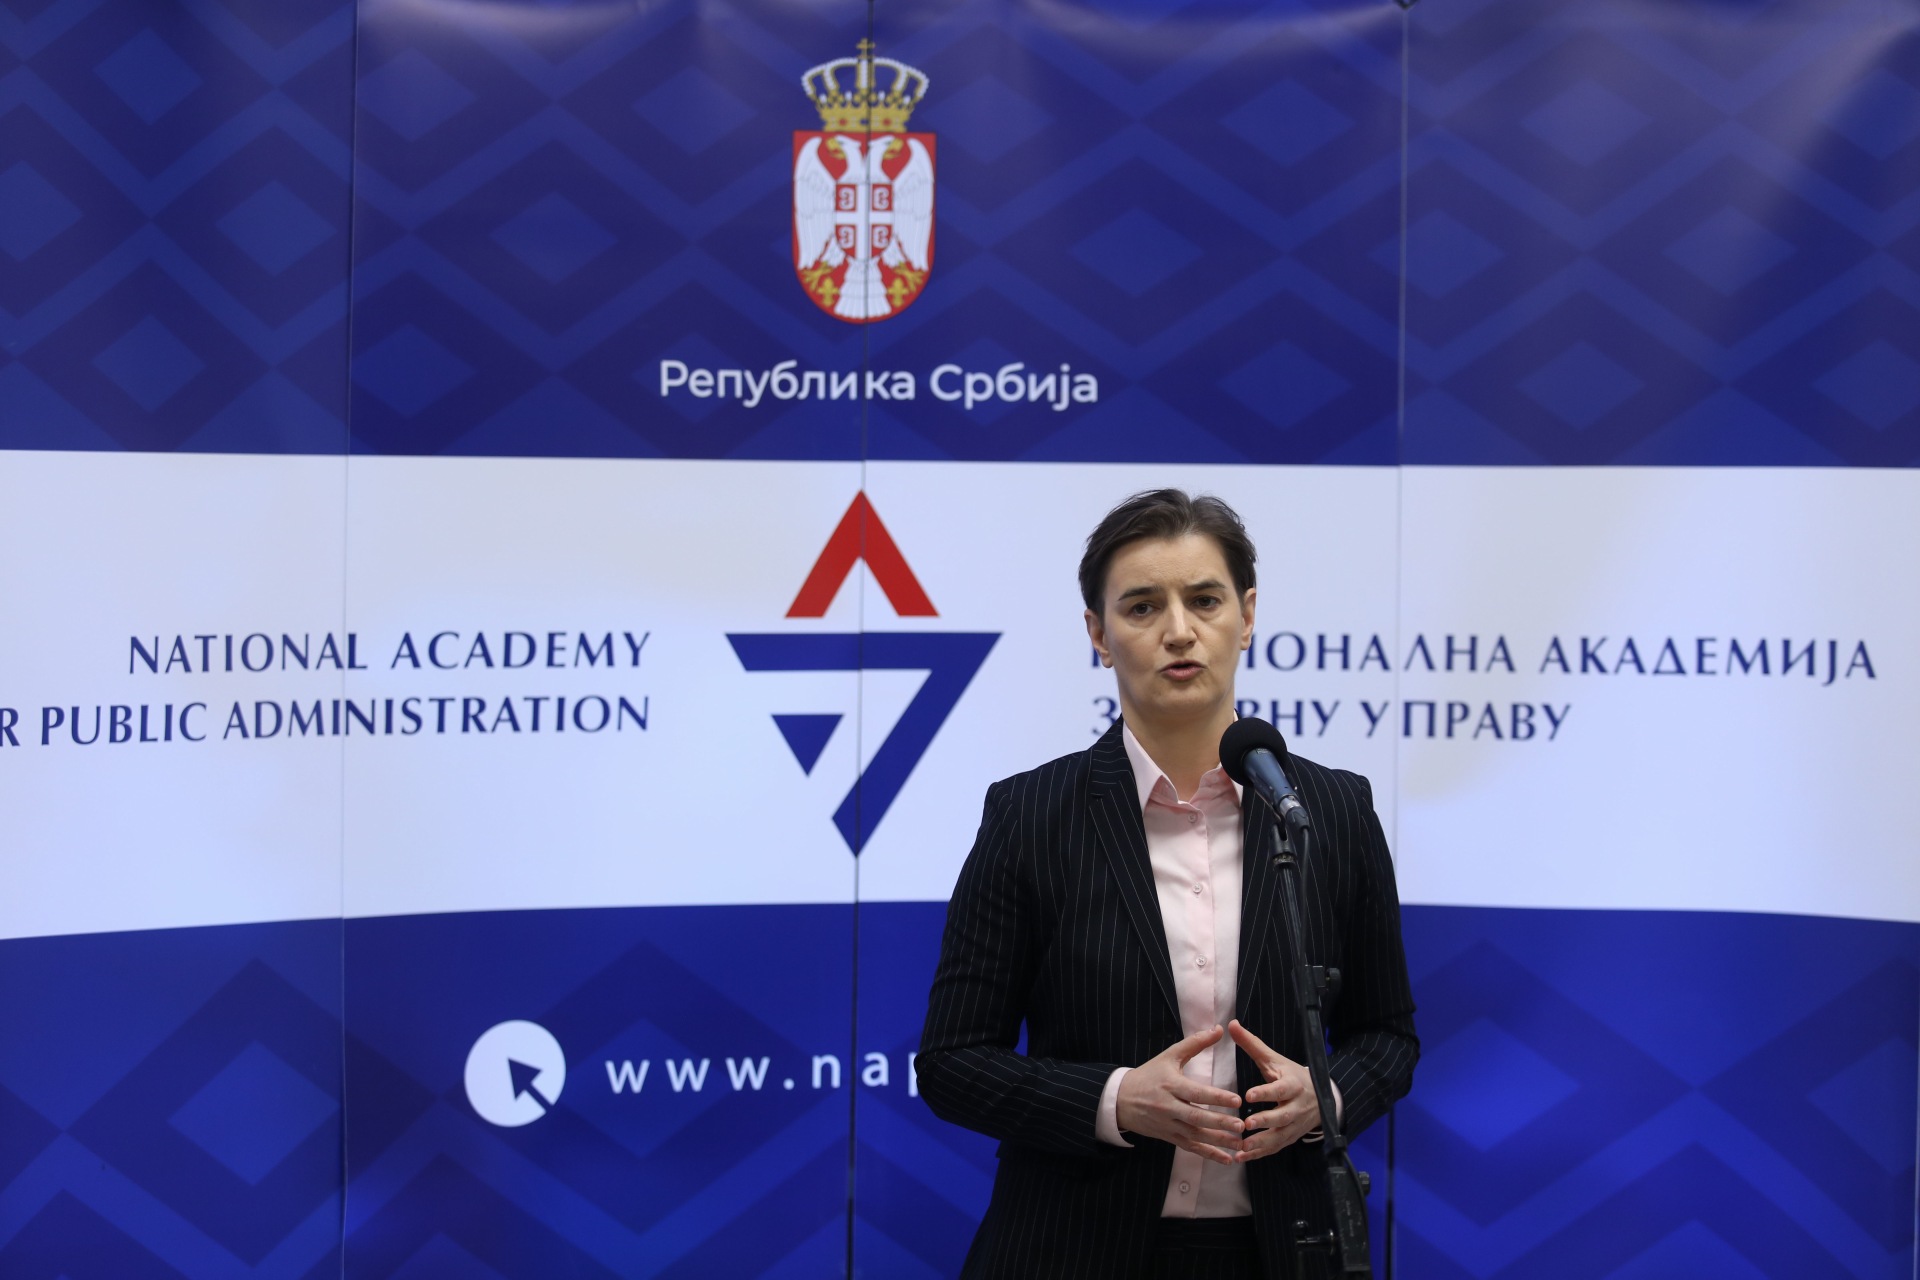 Ана Брнабић отворила тренинг центар Националне академије за јавну управу 